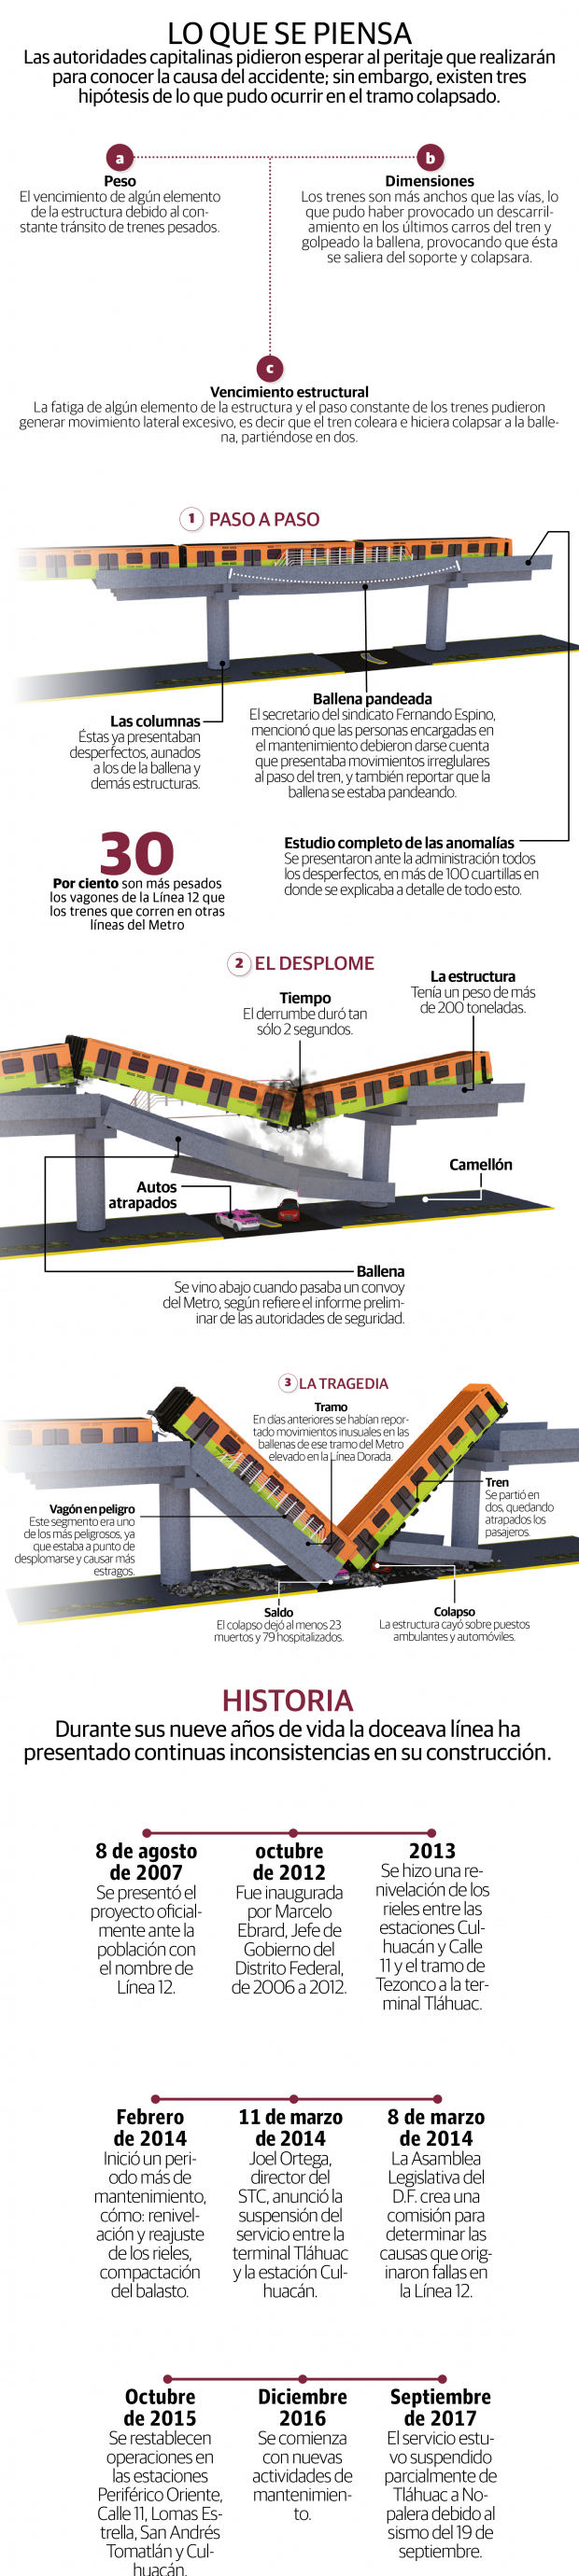 Línea 12 del Metro: Fatiga de estructura y falta de mantenimiento, algunas hipótesis